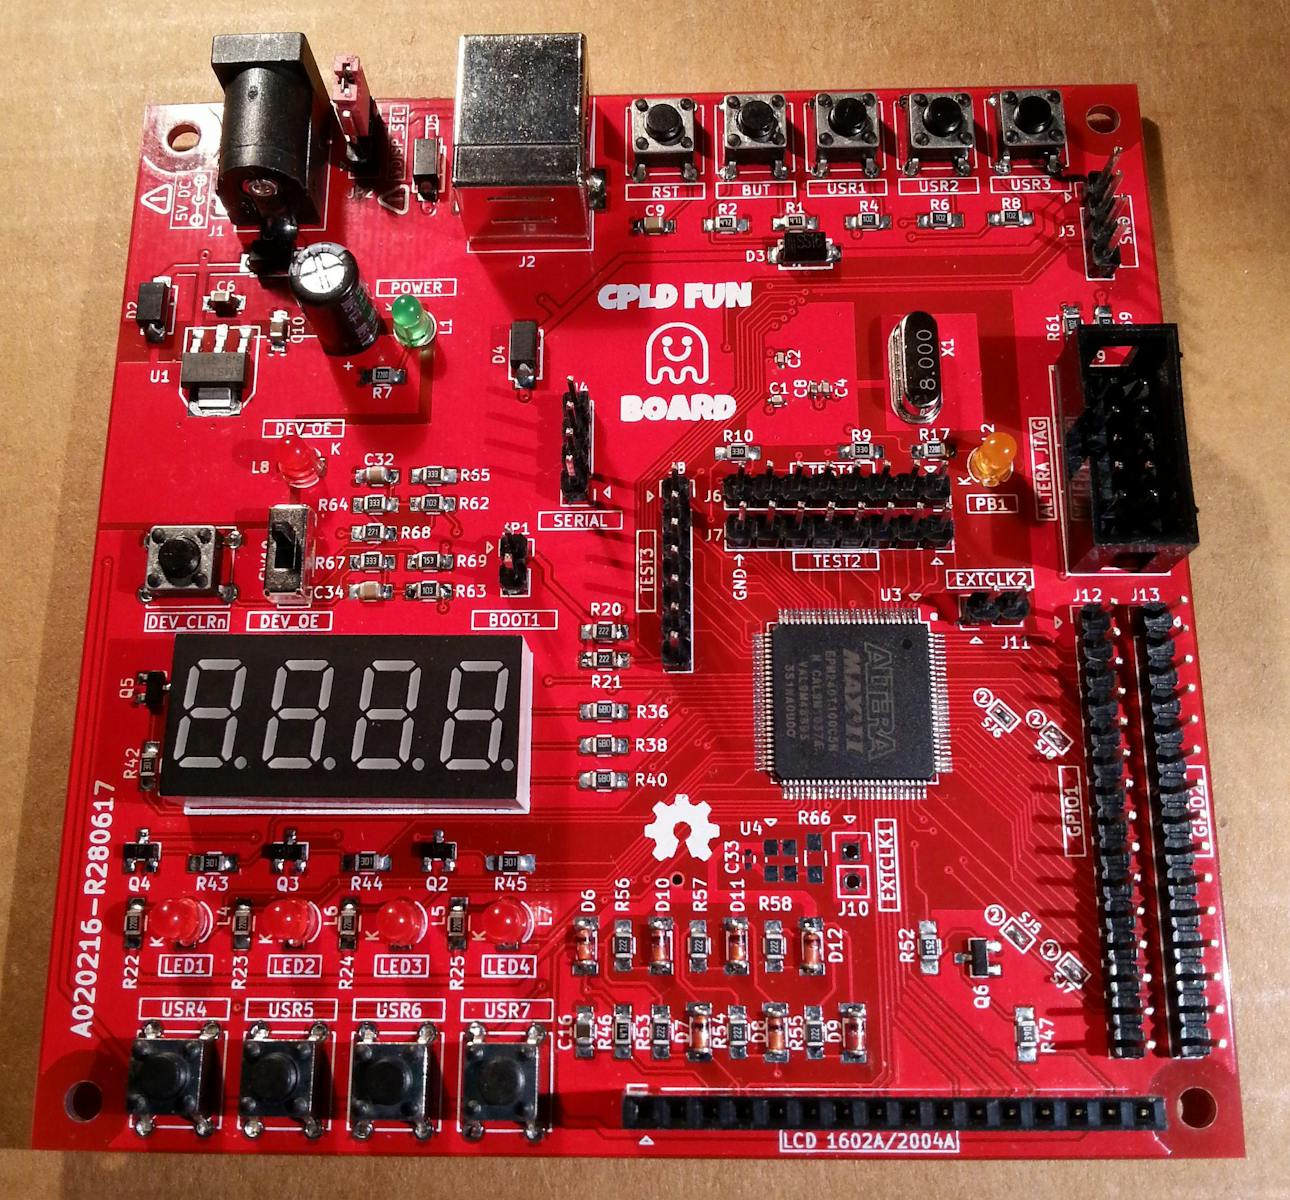 Arduino Cpld Cpld Fun Board Two Dev Boards Into One